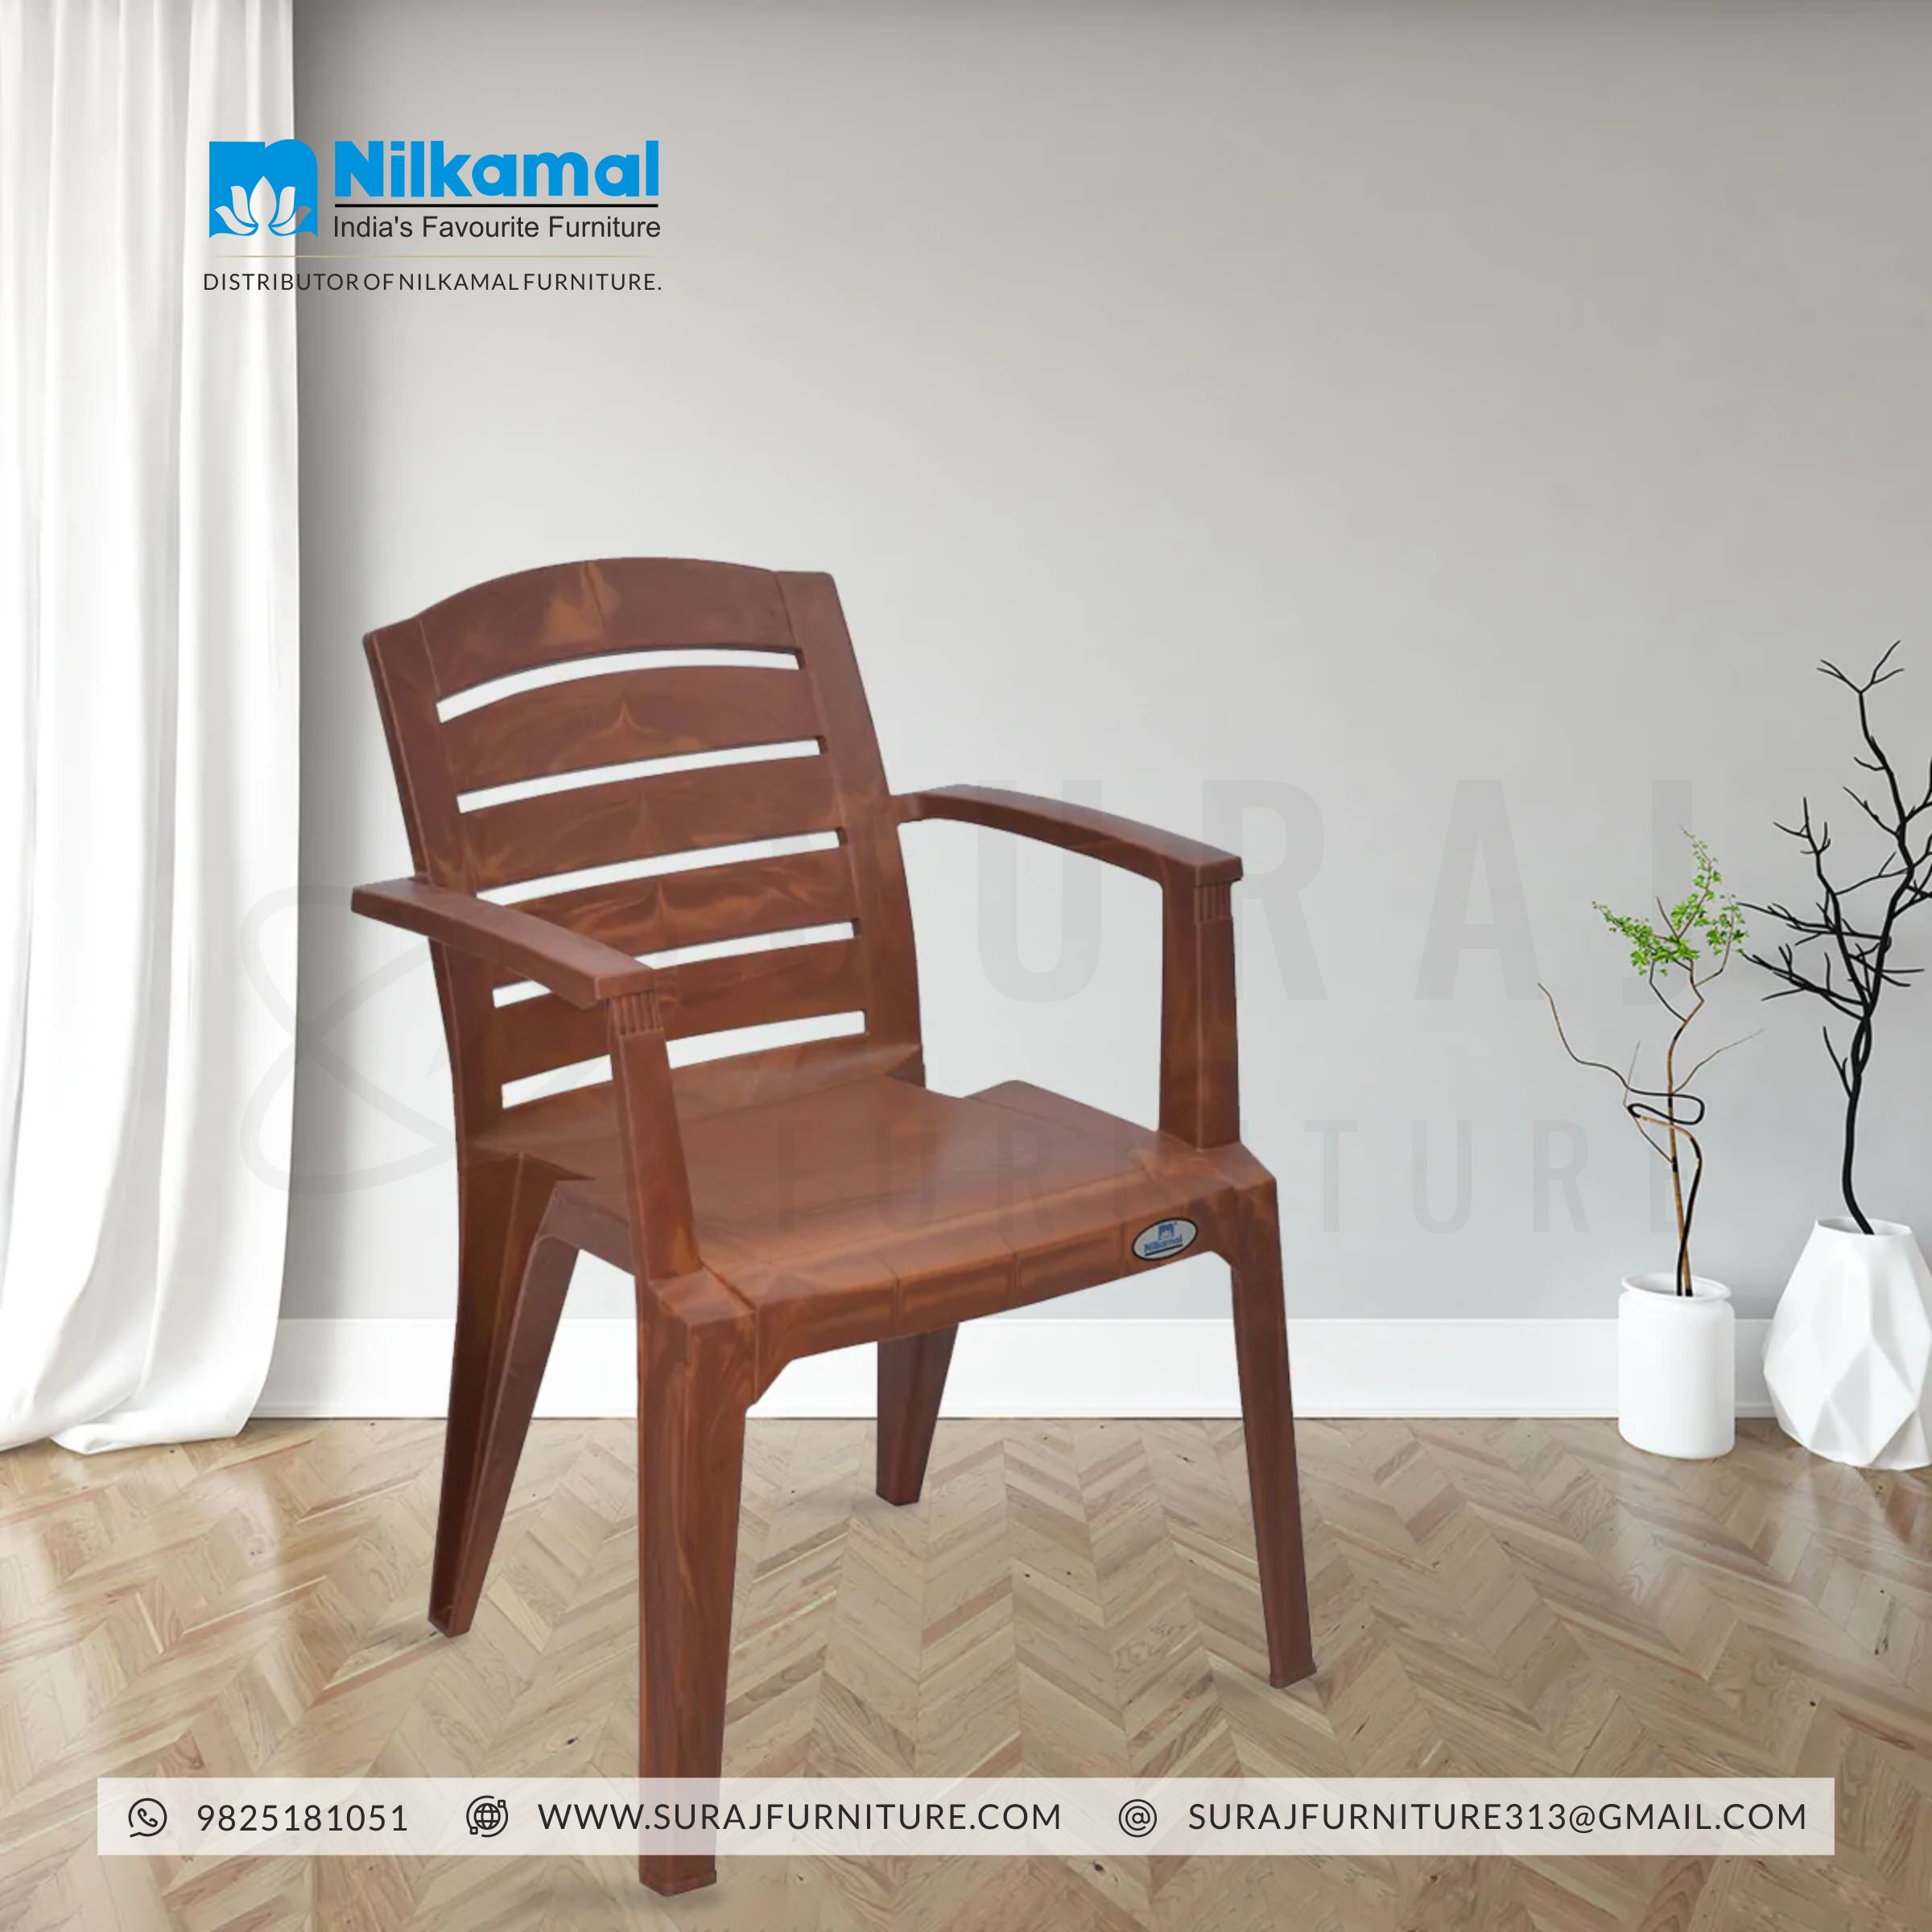 Nilkamal Super Deluxe Chair